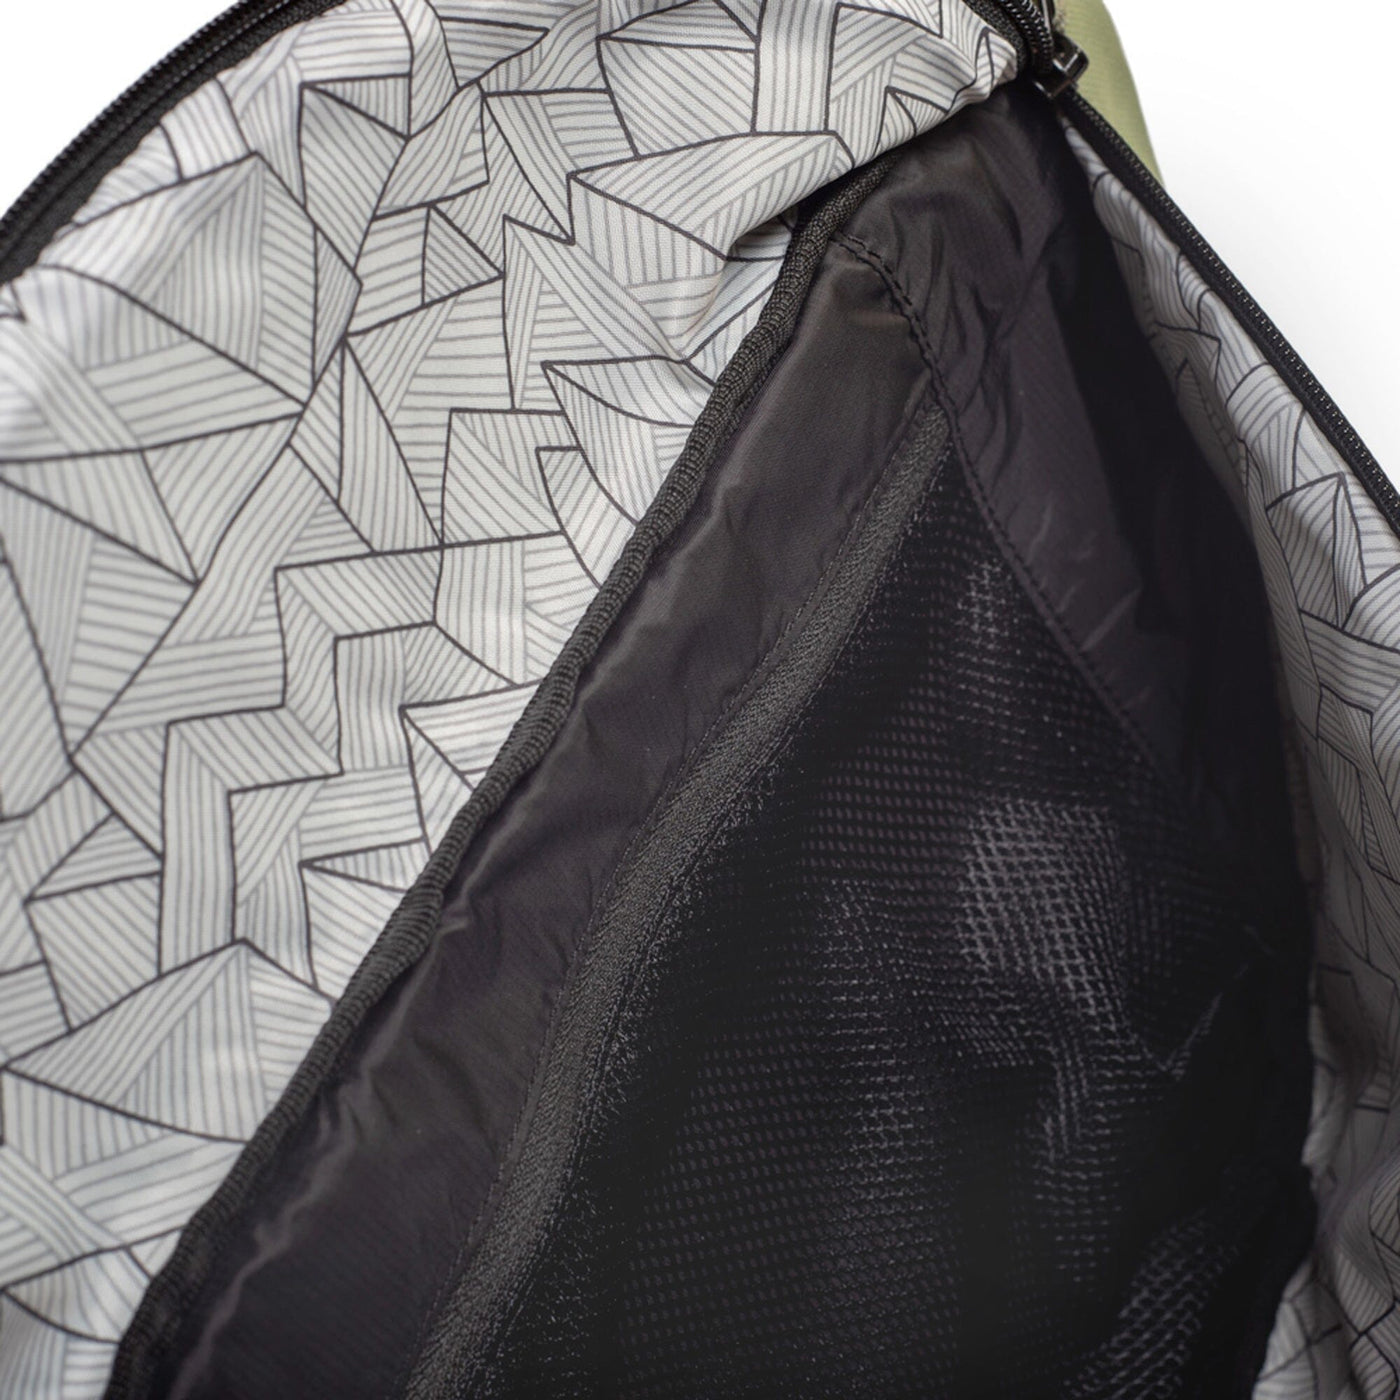 mero mero hoian recycled bum bag inside zipped mesh pocket